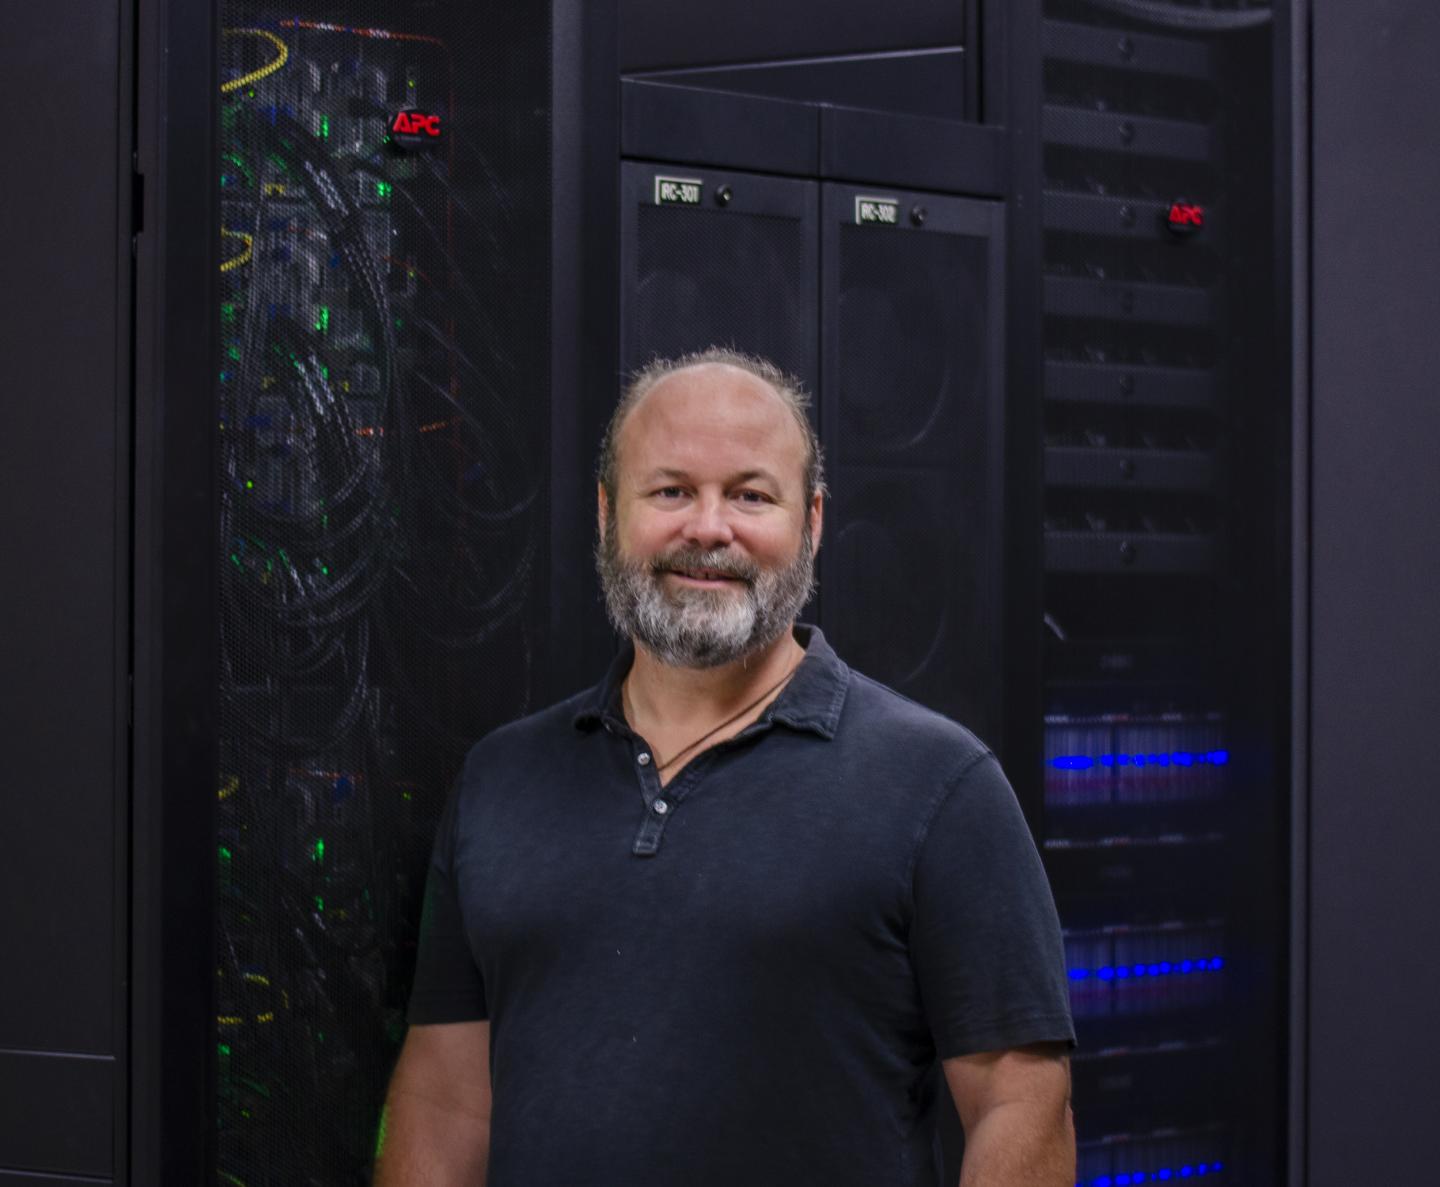 Ari Kahn, Texas Advanced Computing Center (TACC)